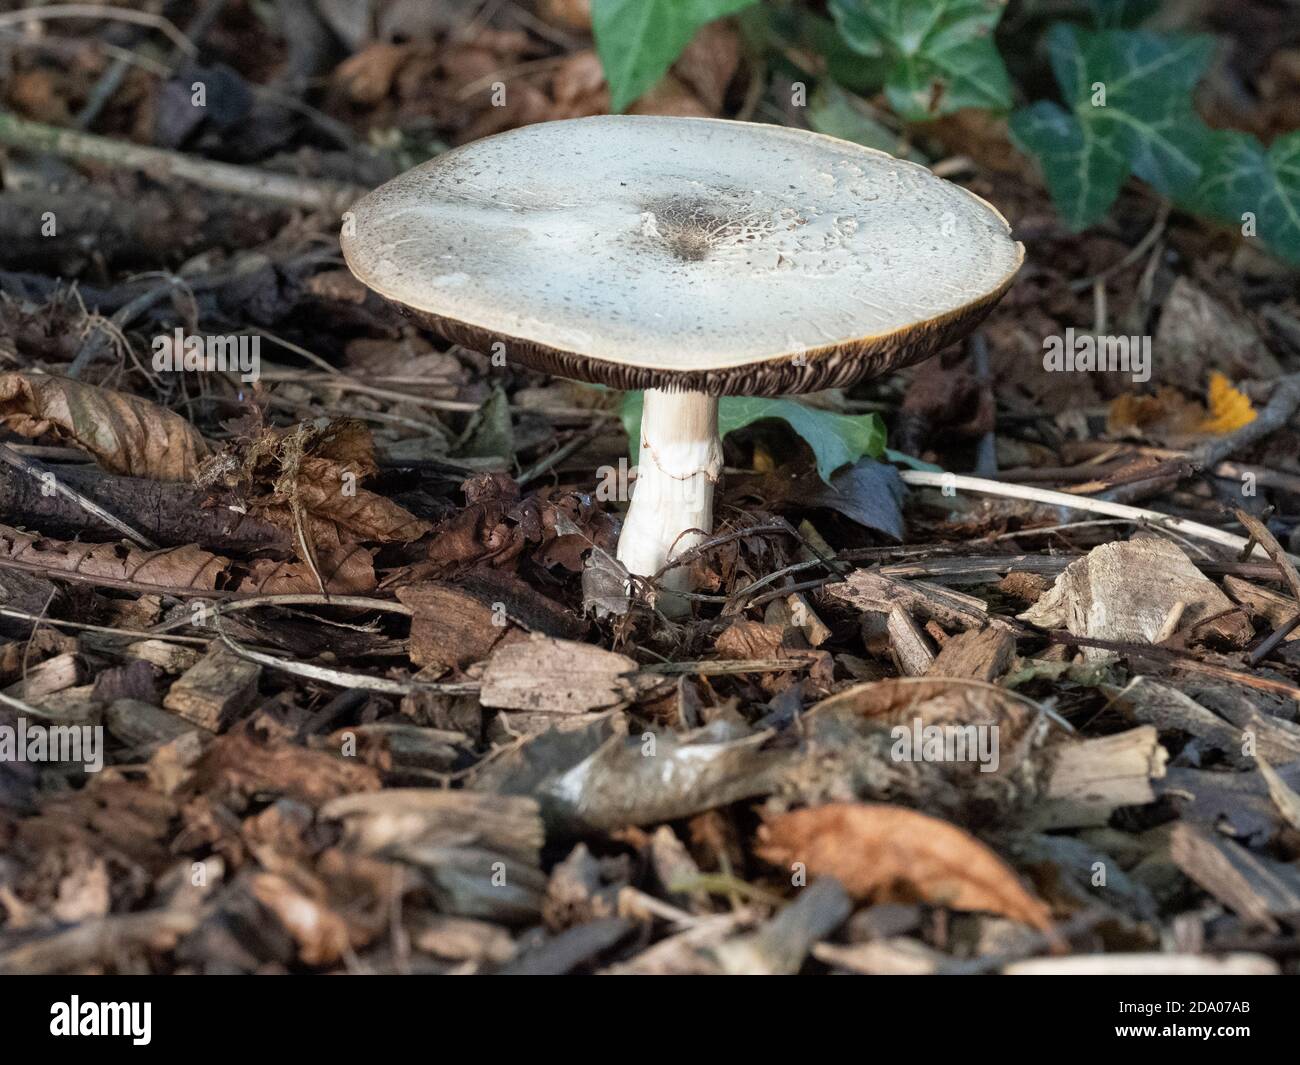 Flat white woodland mushroom, Norfolk, UK Stock Photo